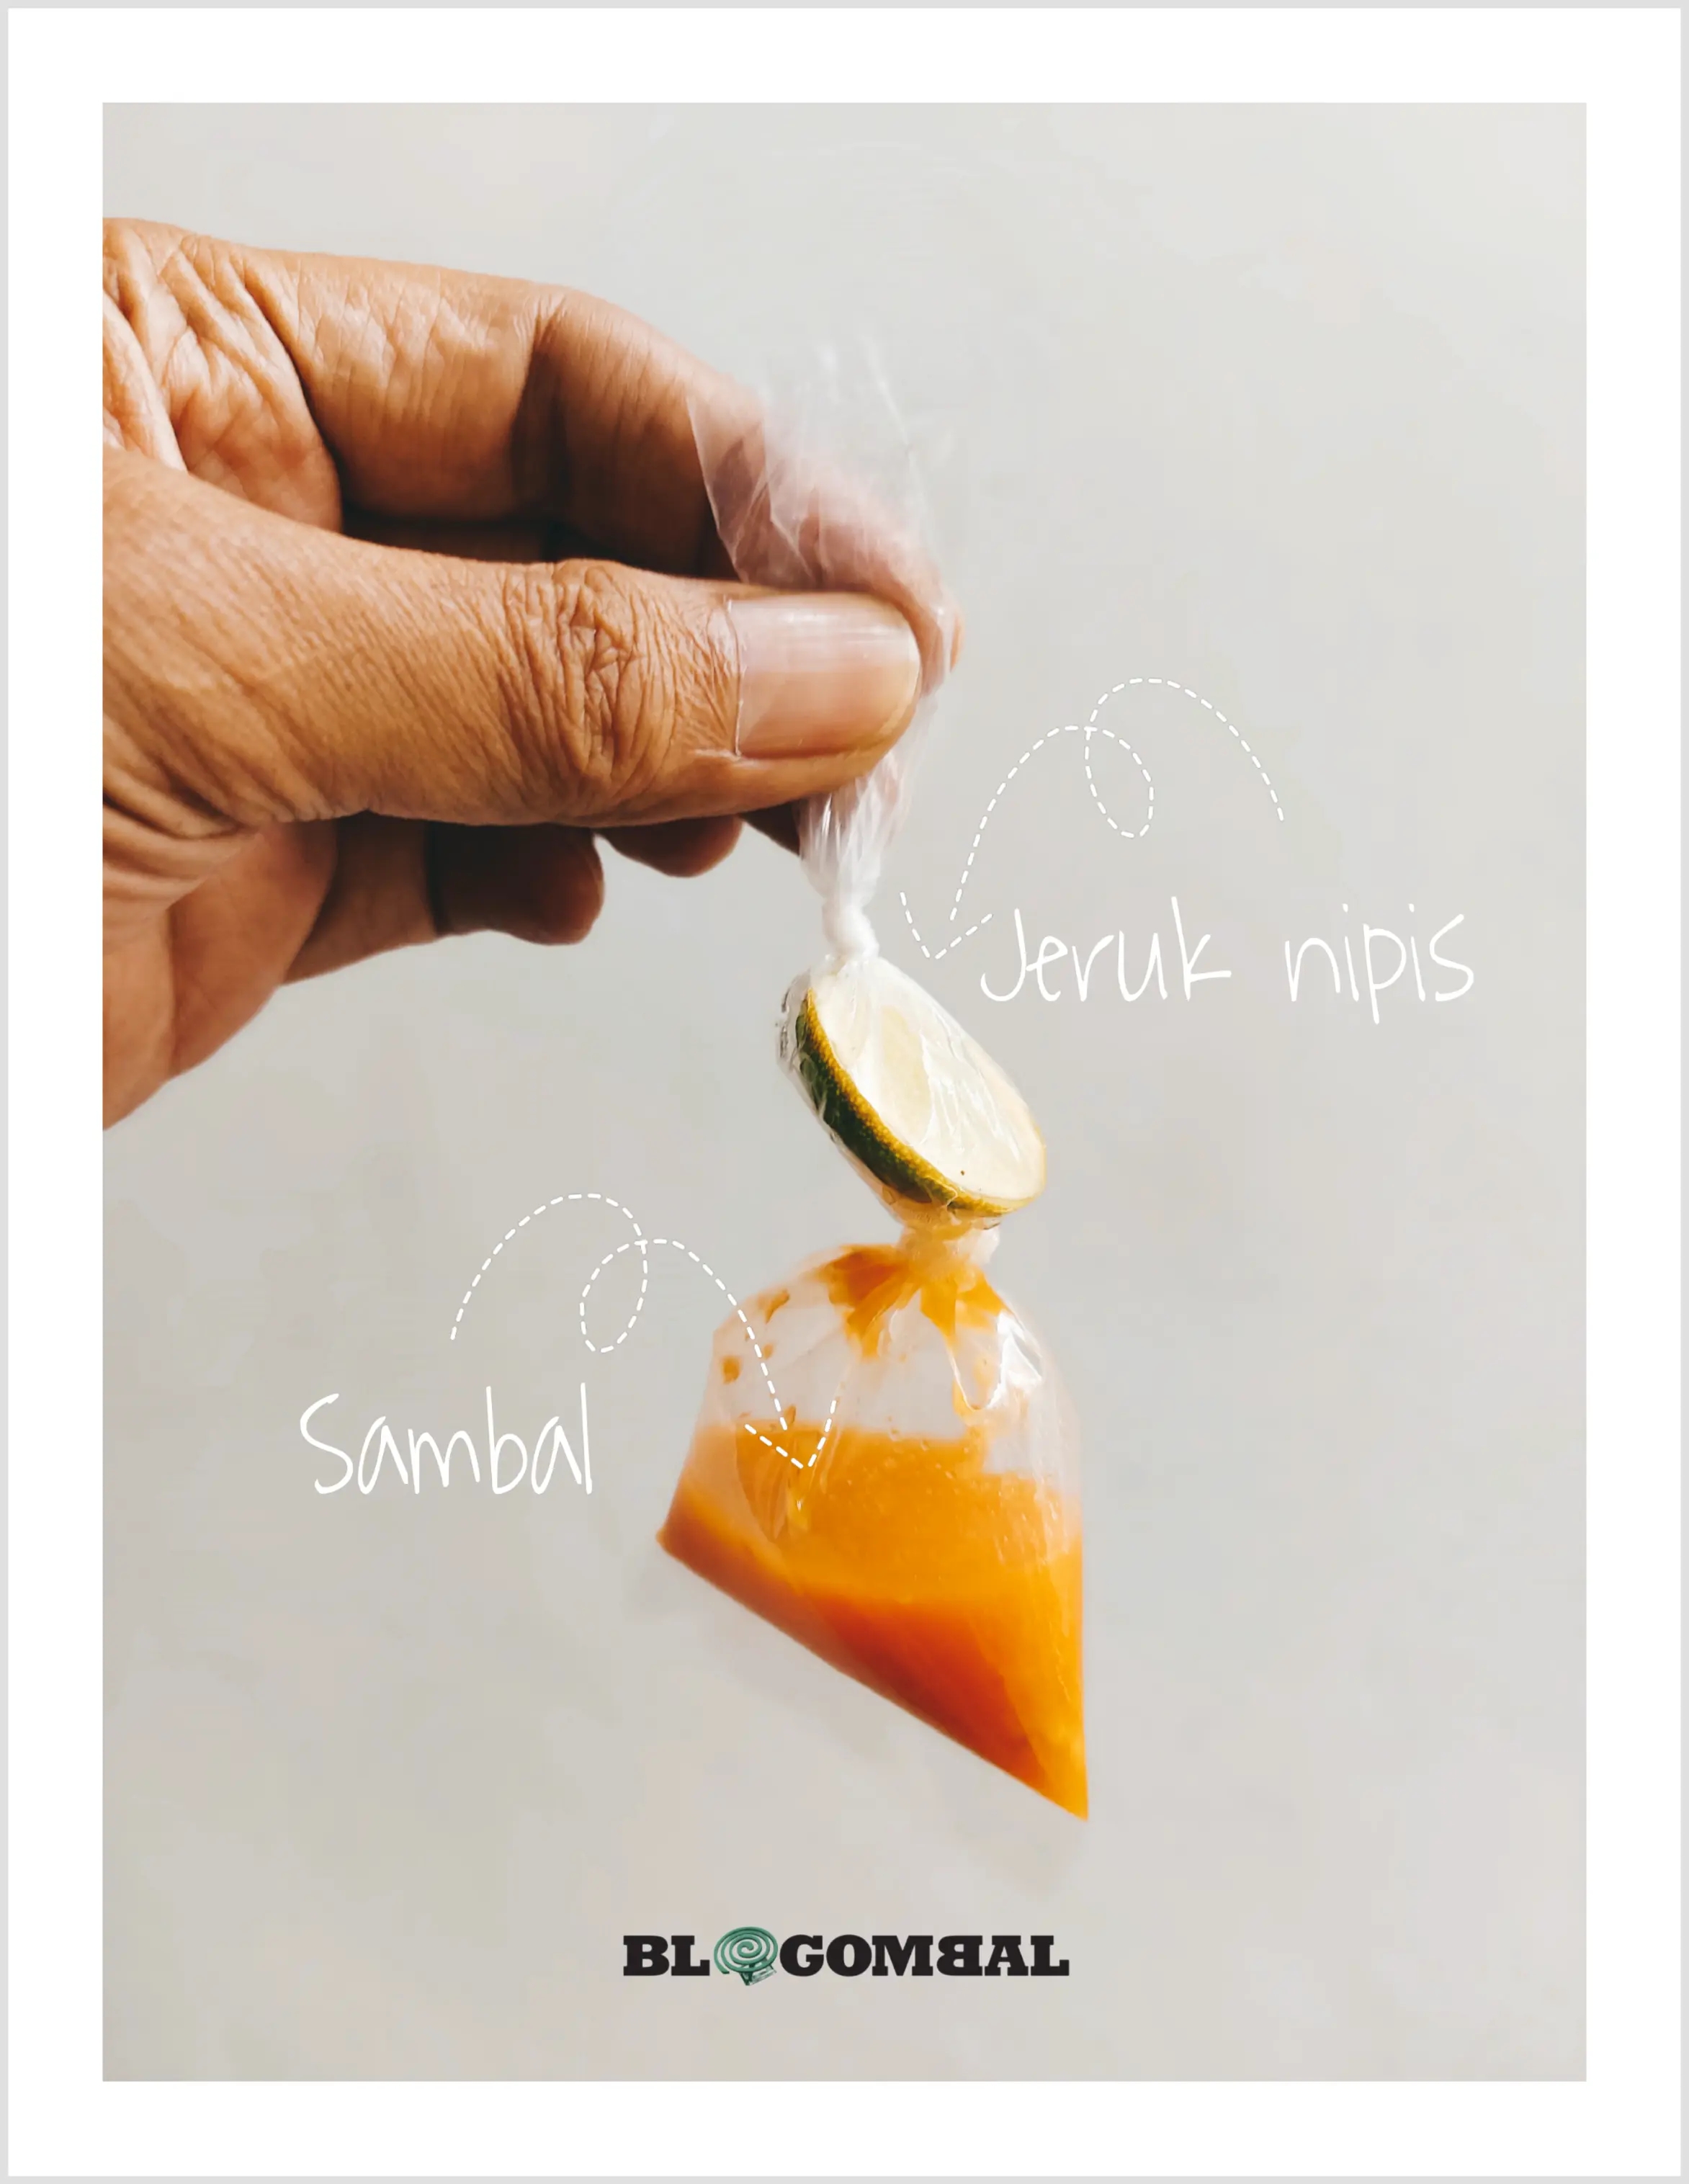 Ikatan kantong plastik pada sambal dan jeruk nipis yang sukar dibuka 